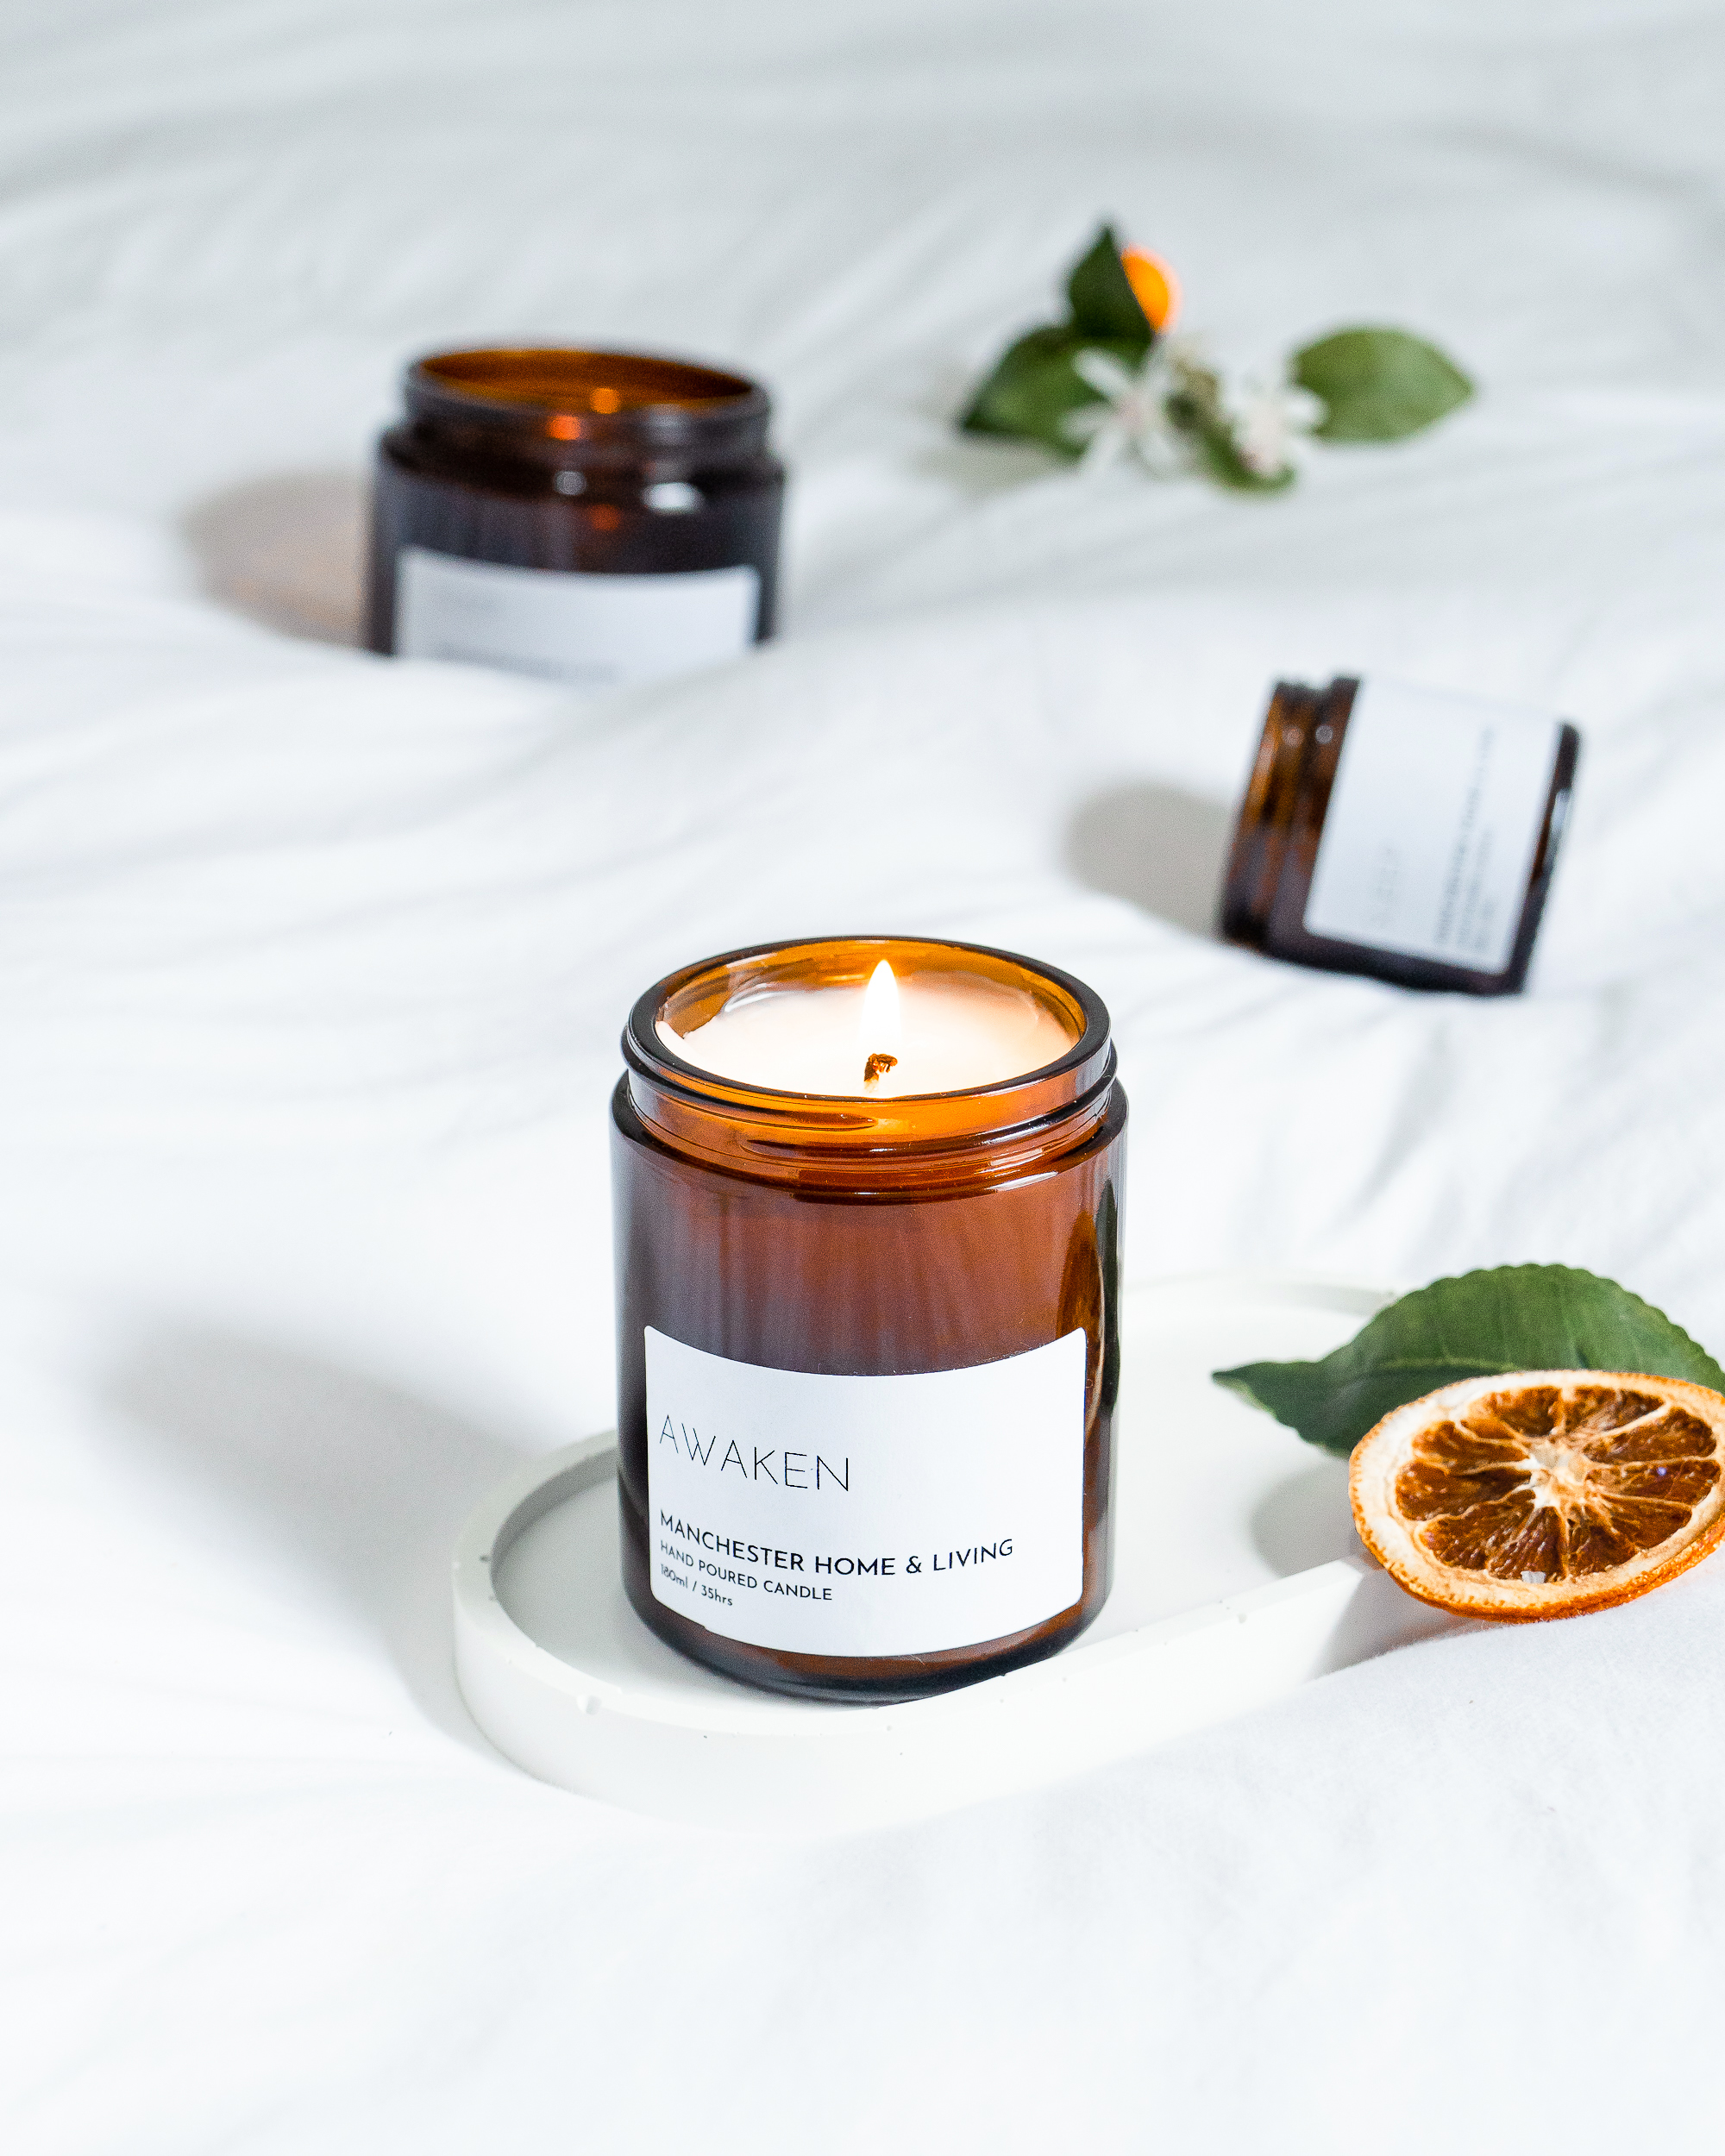 AWAKEN – Citrus & Herb Aromatherapy Candle